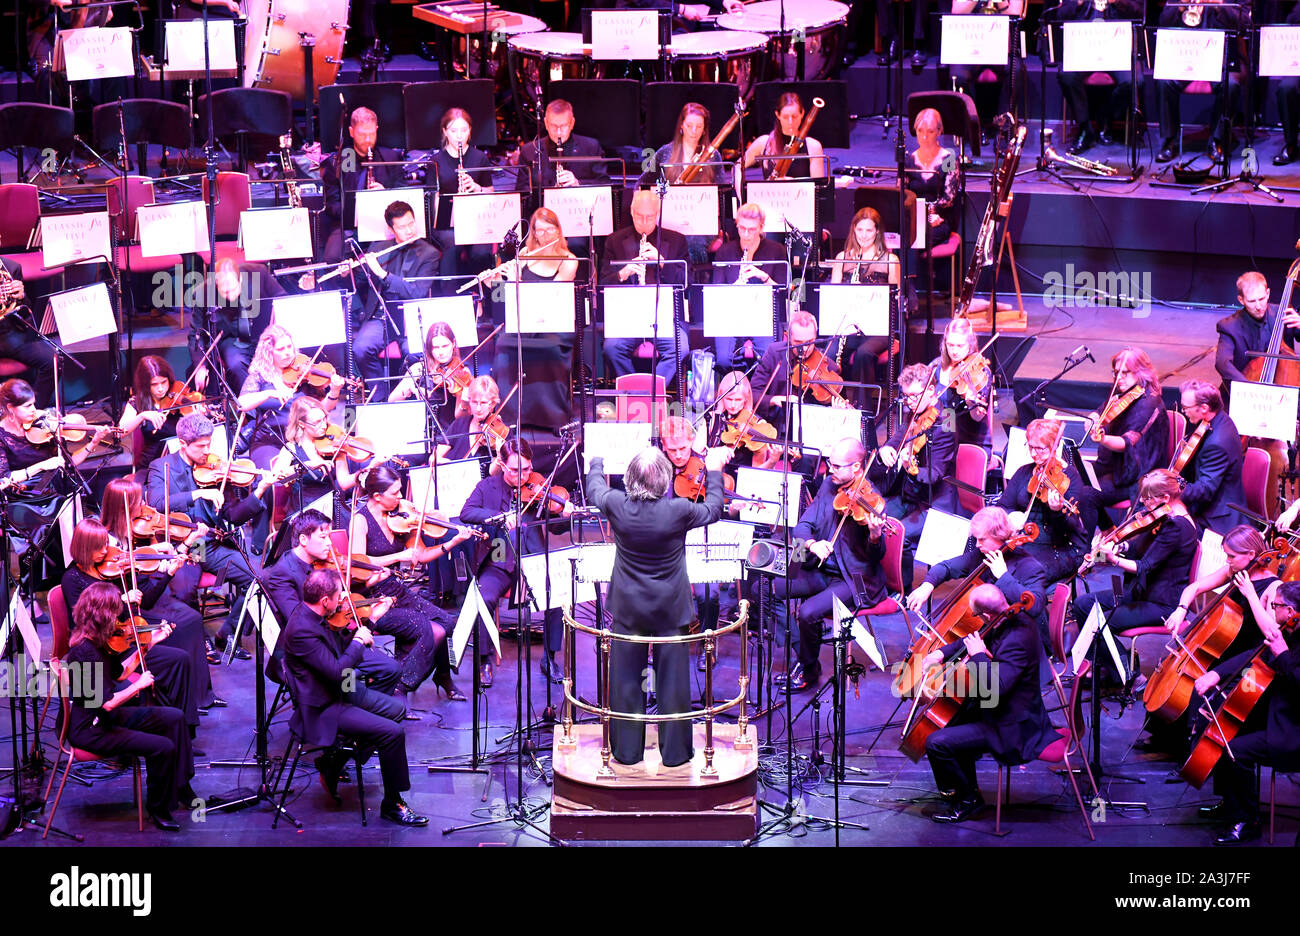 Stephen Barlow conduit l'orchestre et les Chœurs de sympathie Bournemouth lors d'une performance d'Ouverture 1812 de Tchaïkovski à Classic FM Live au Royal Albert Hall de Londres. Banque D'Images